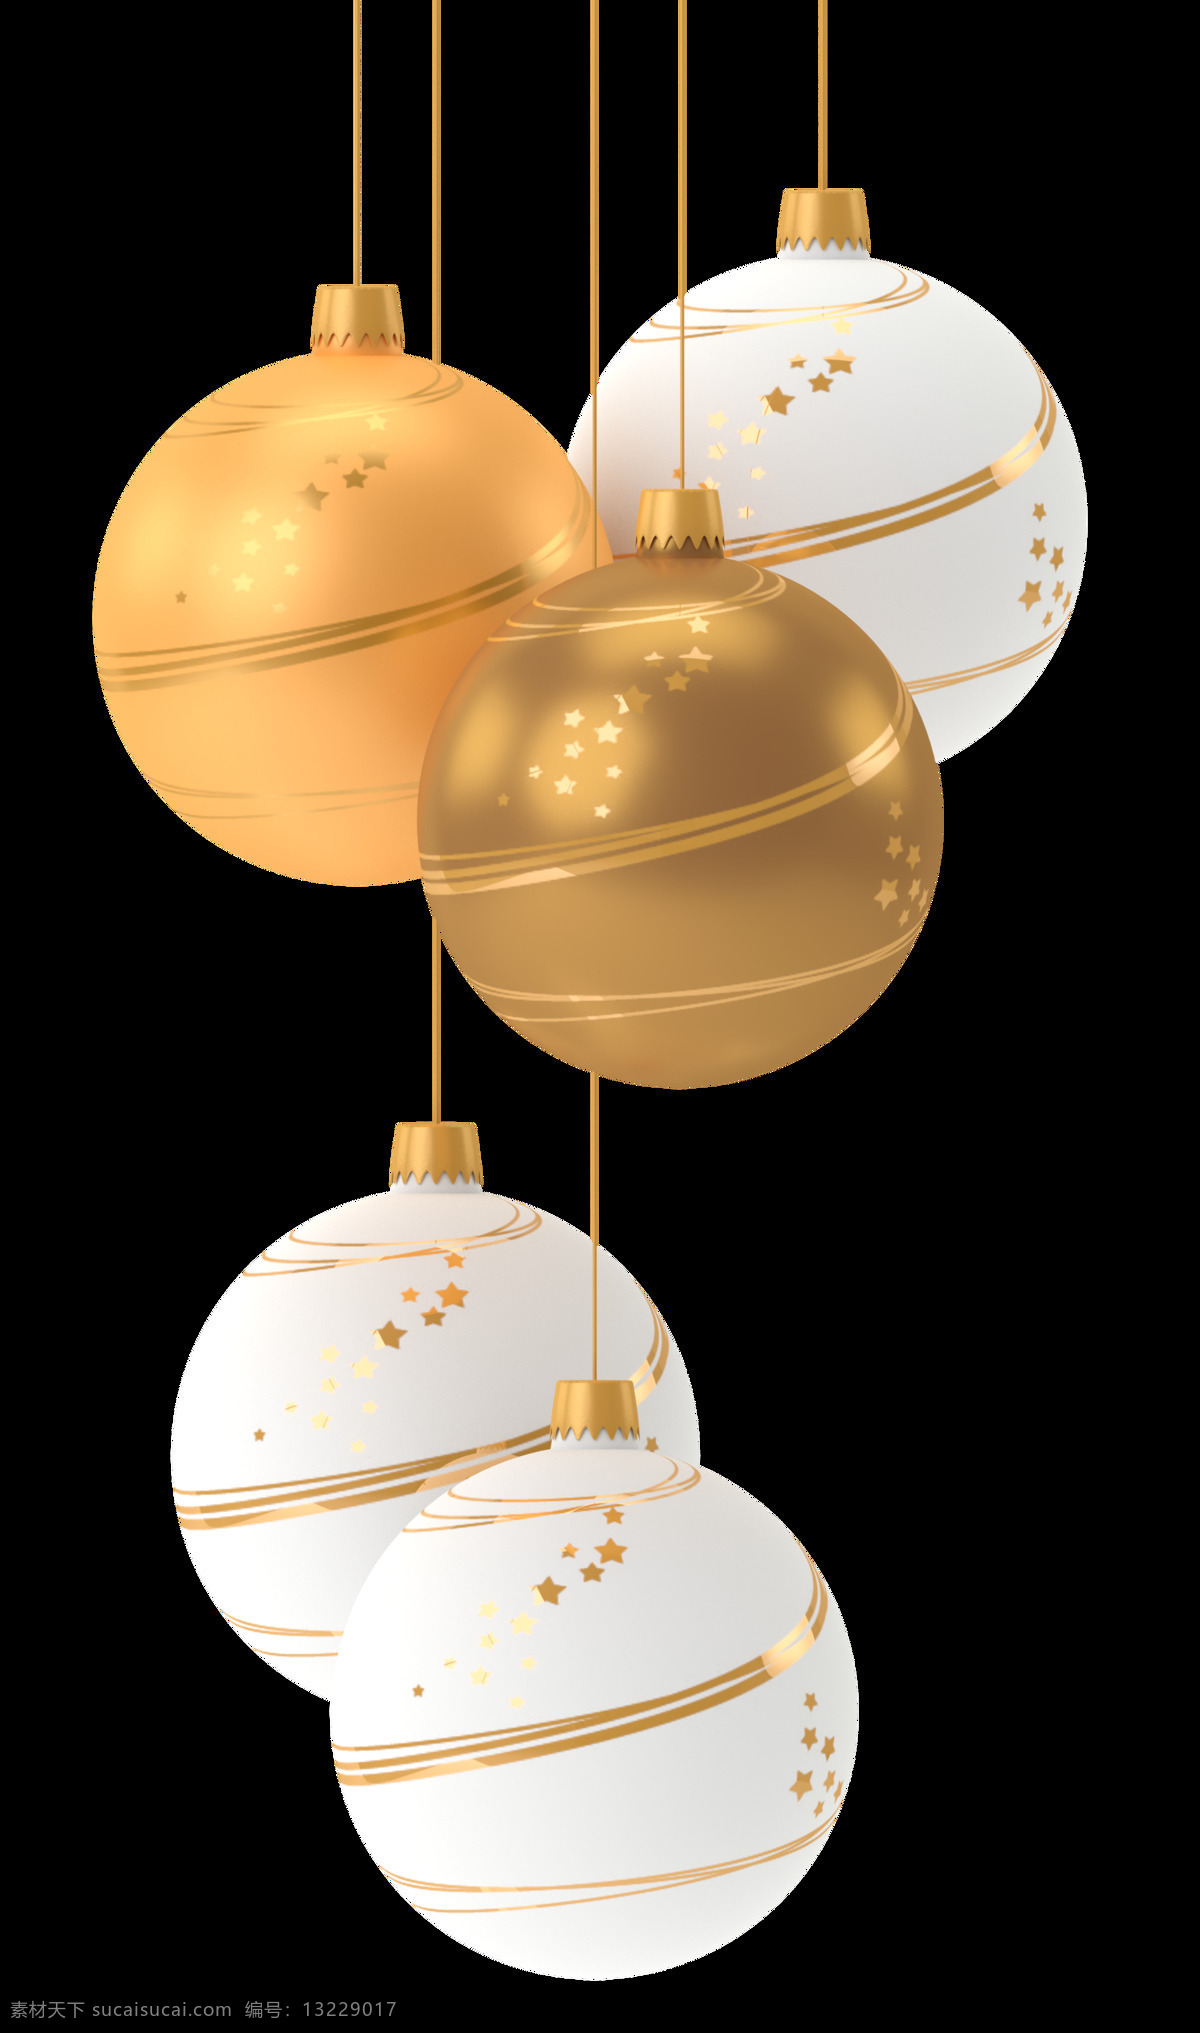 圣诞 装饰 挂件 圣诞节 节日 气球 新年 庆祝 装饰品 底纹边框 其他素材